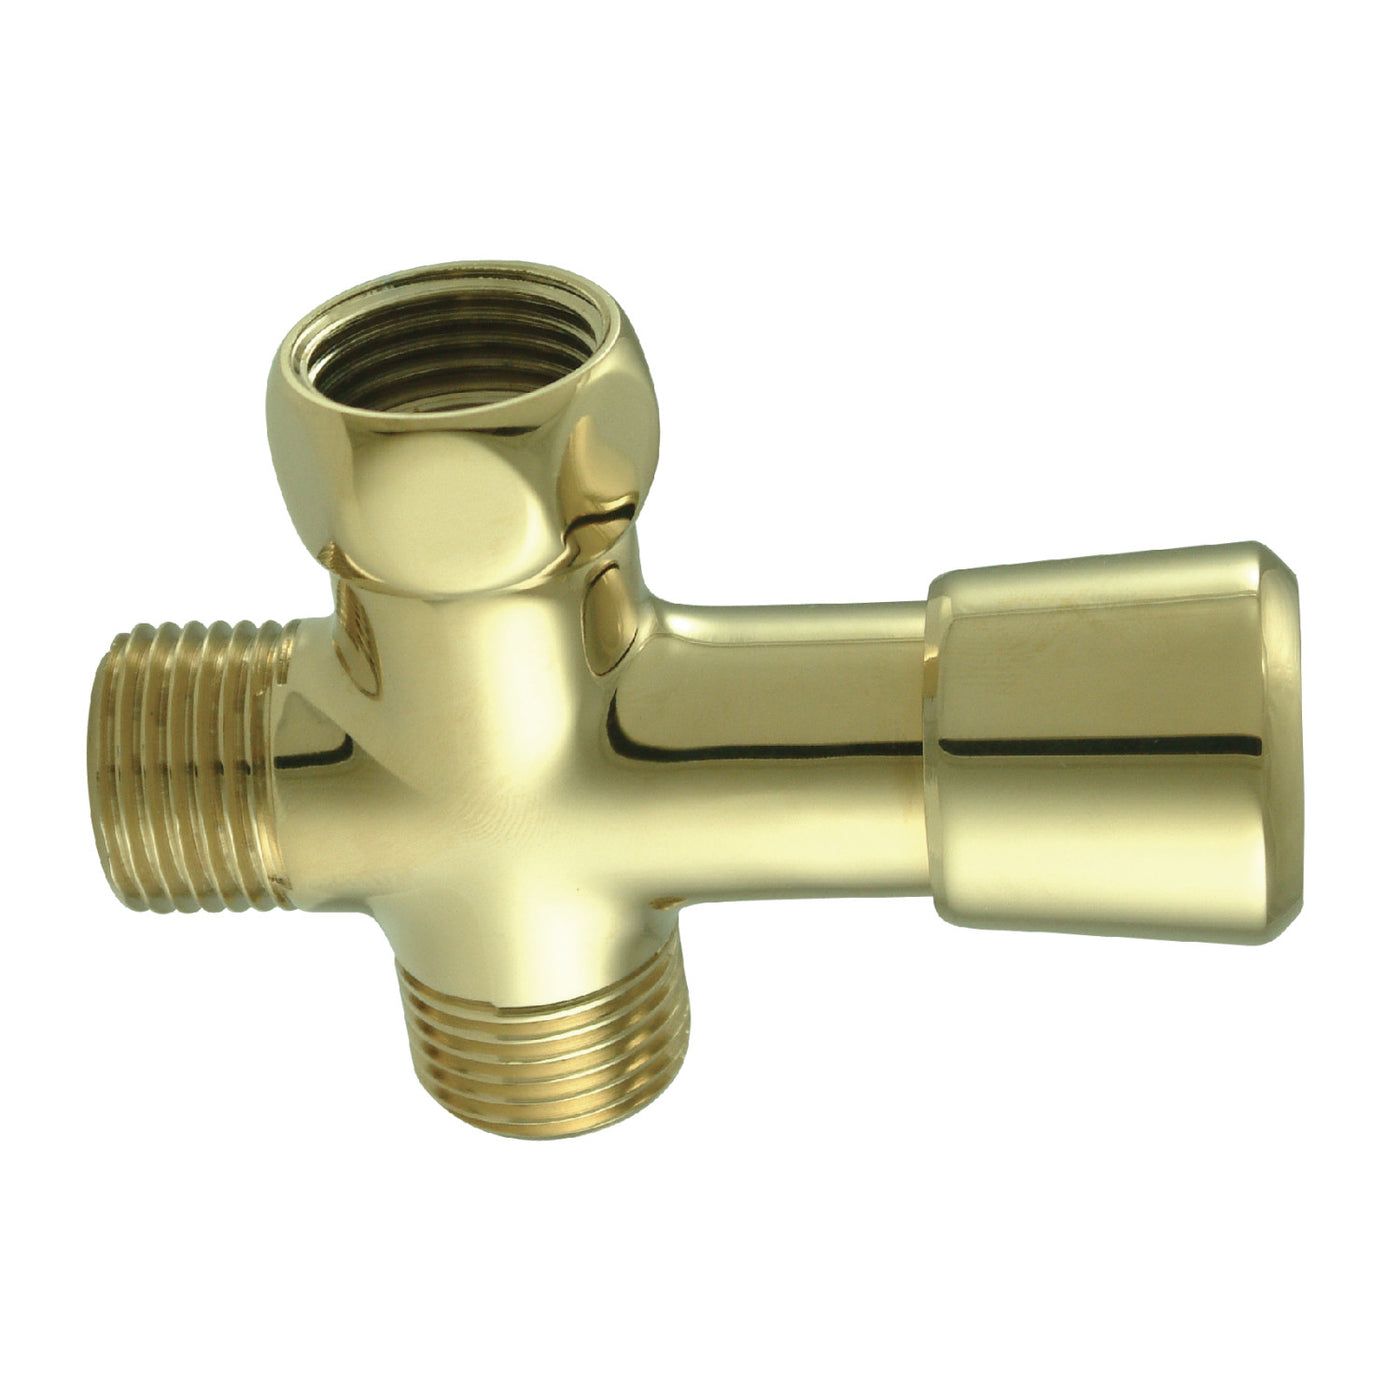 Elements of Design DK161A2 Shower Diverter, Polished Brass